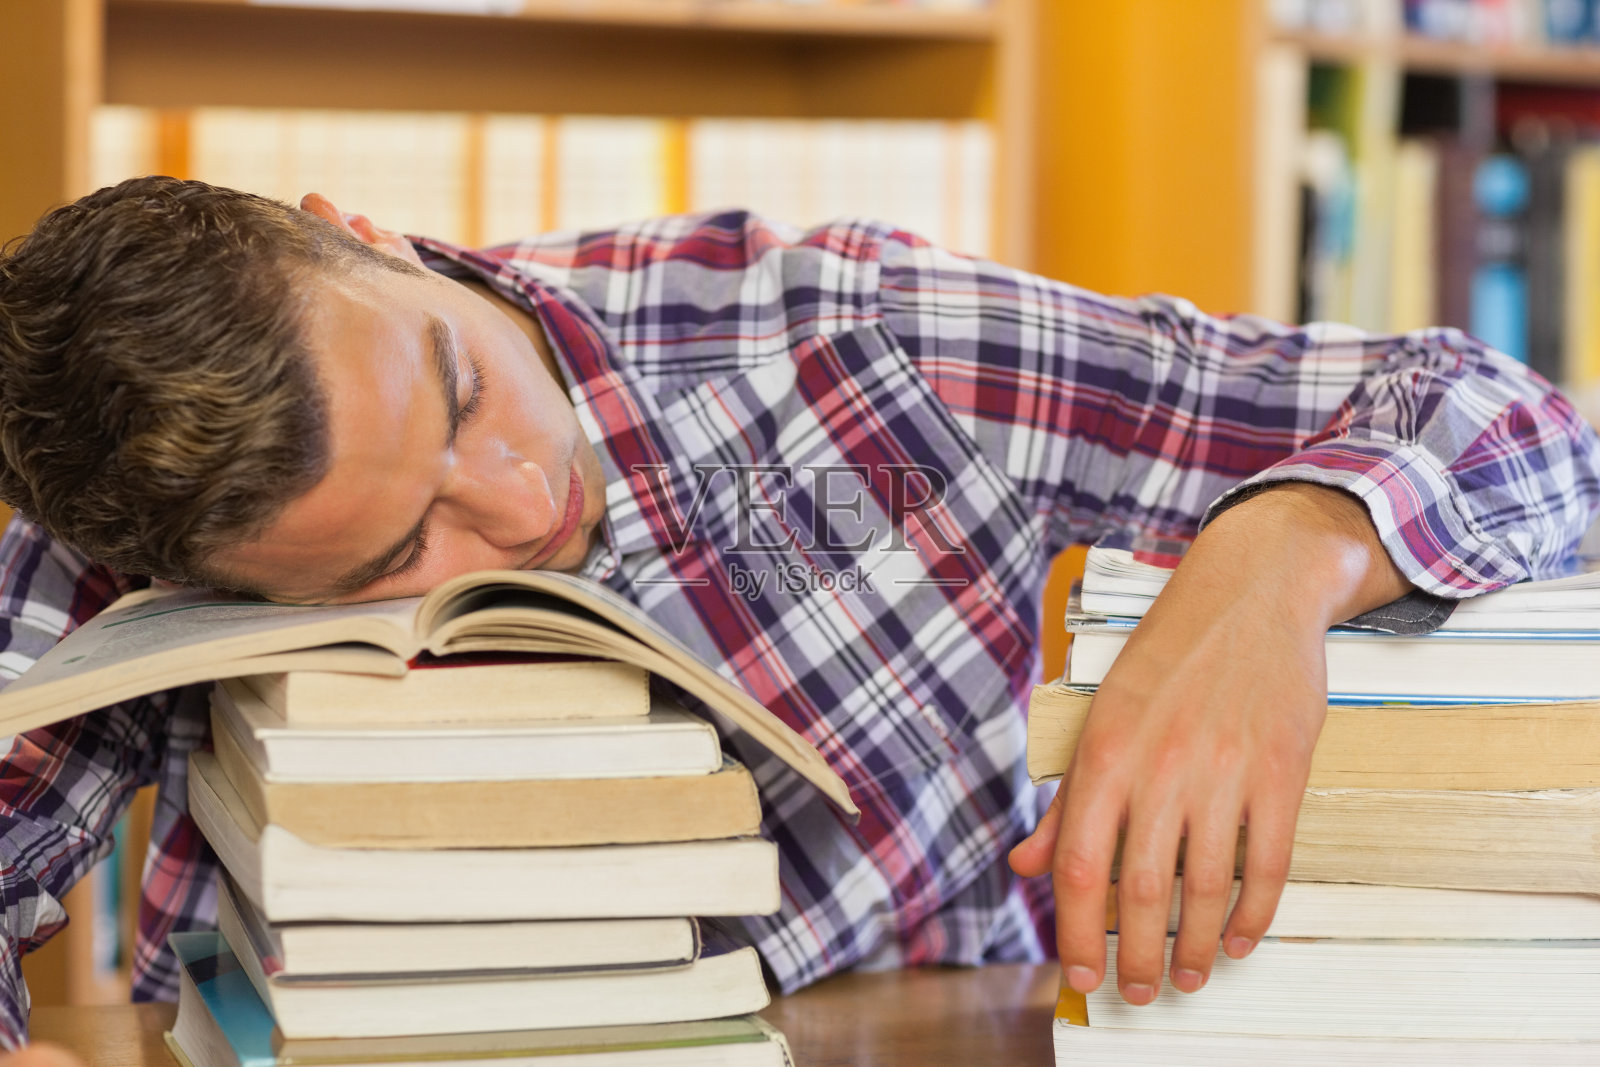 疲惫英俊的学生把头靠在成堆的书上休息照片摄影图片